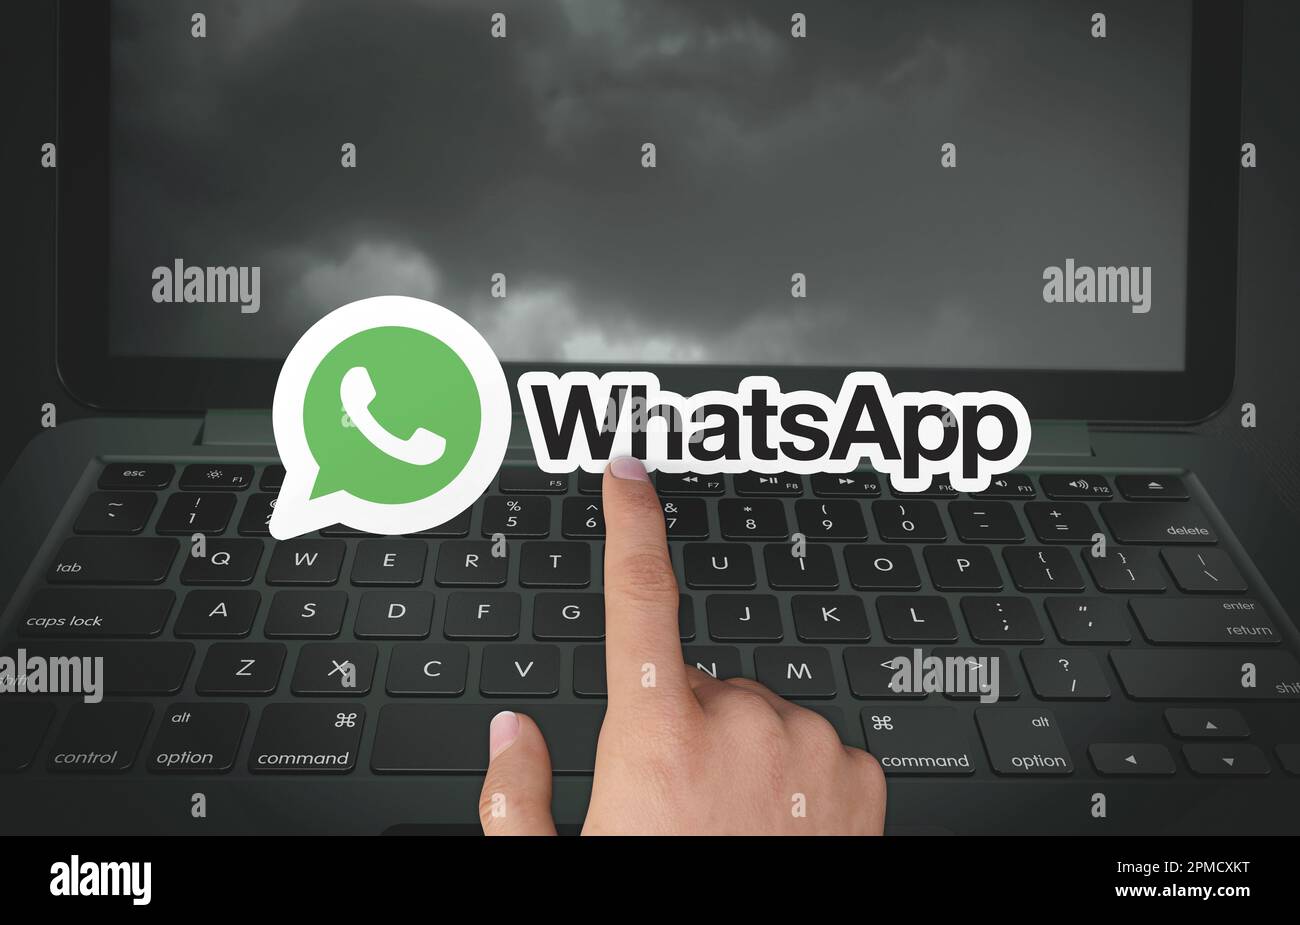 WhatsApp Image 2020-07-28 at 11.38.57 PM (1).jpeg